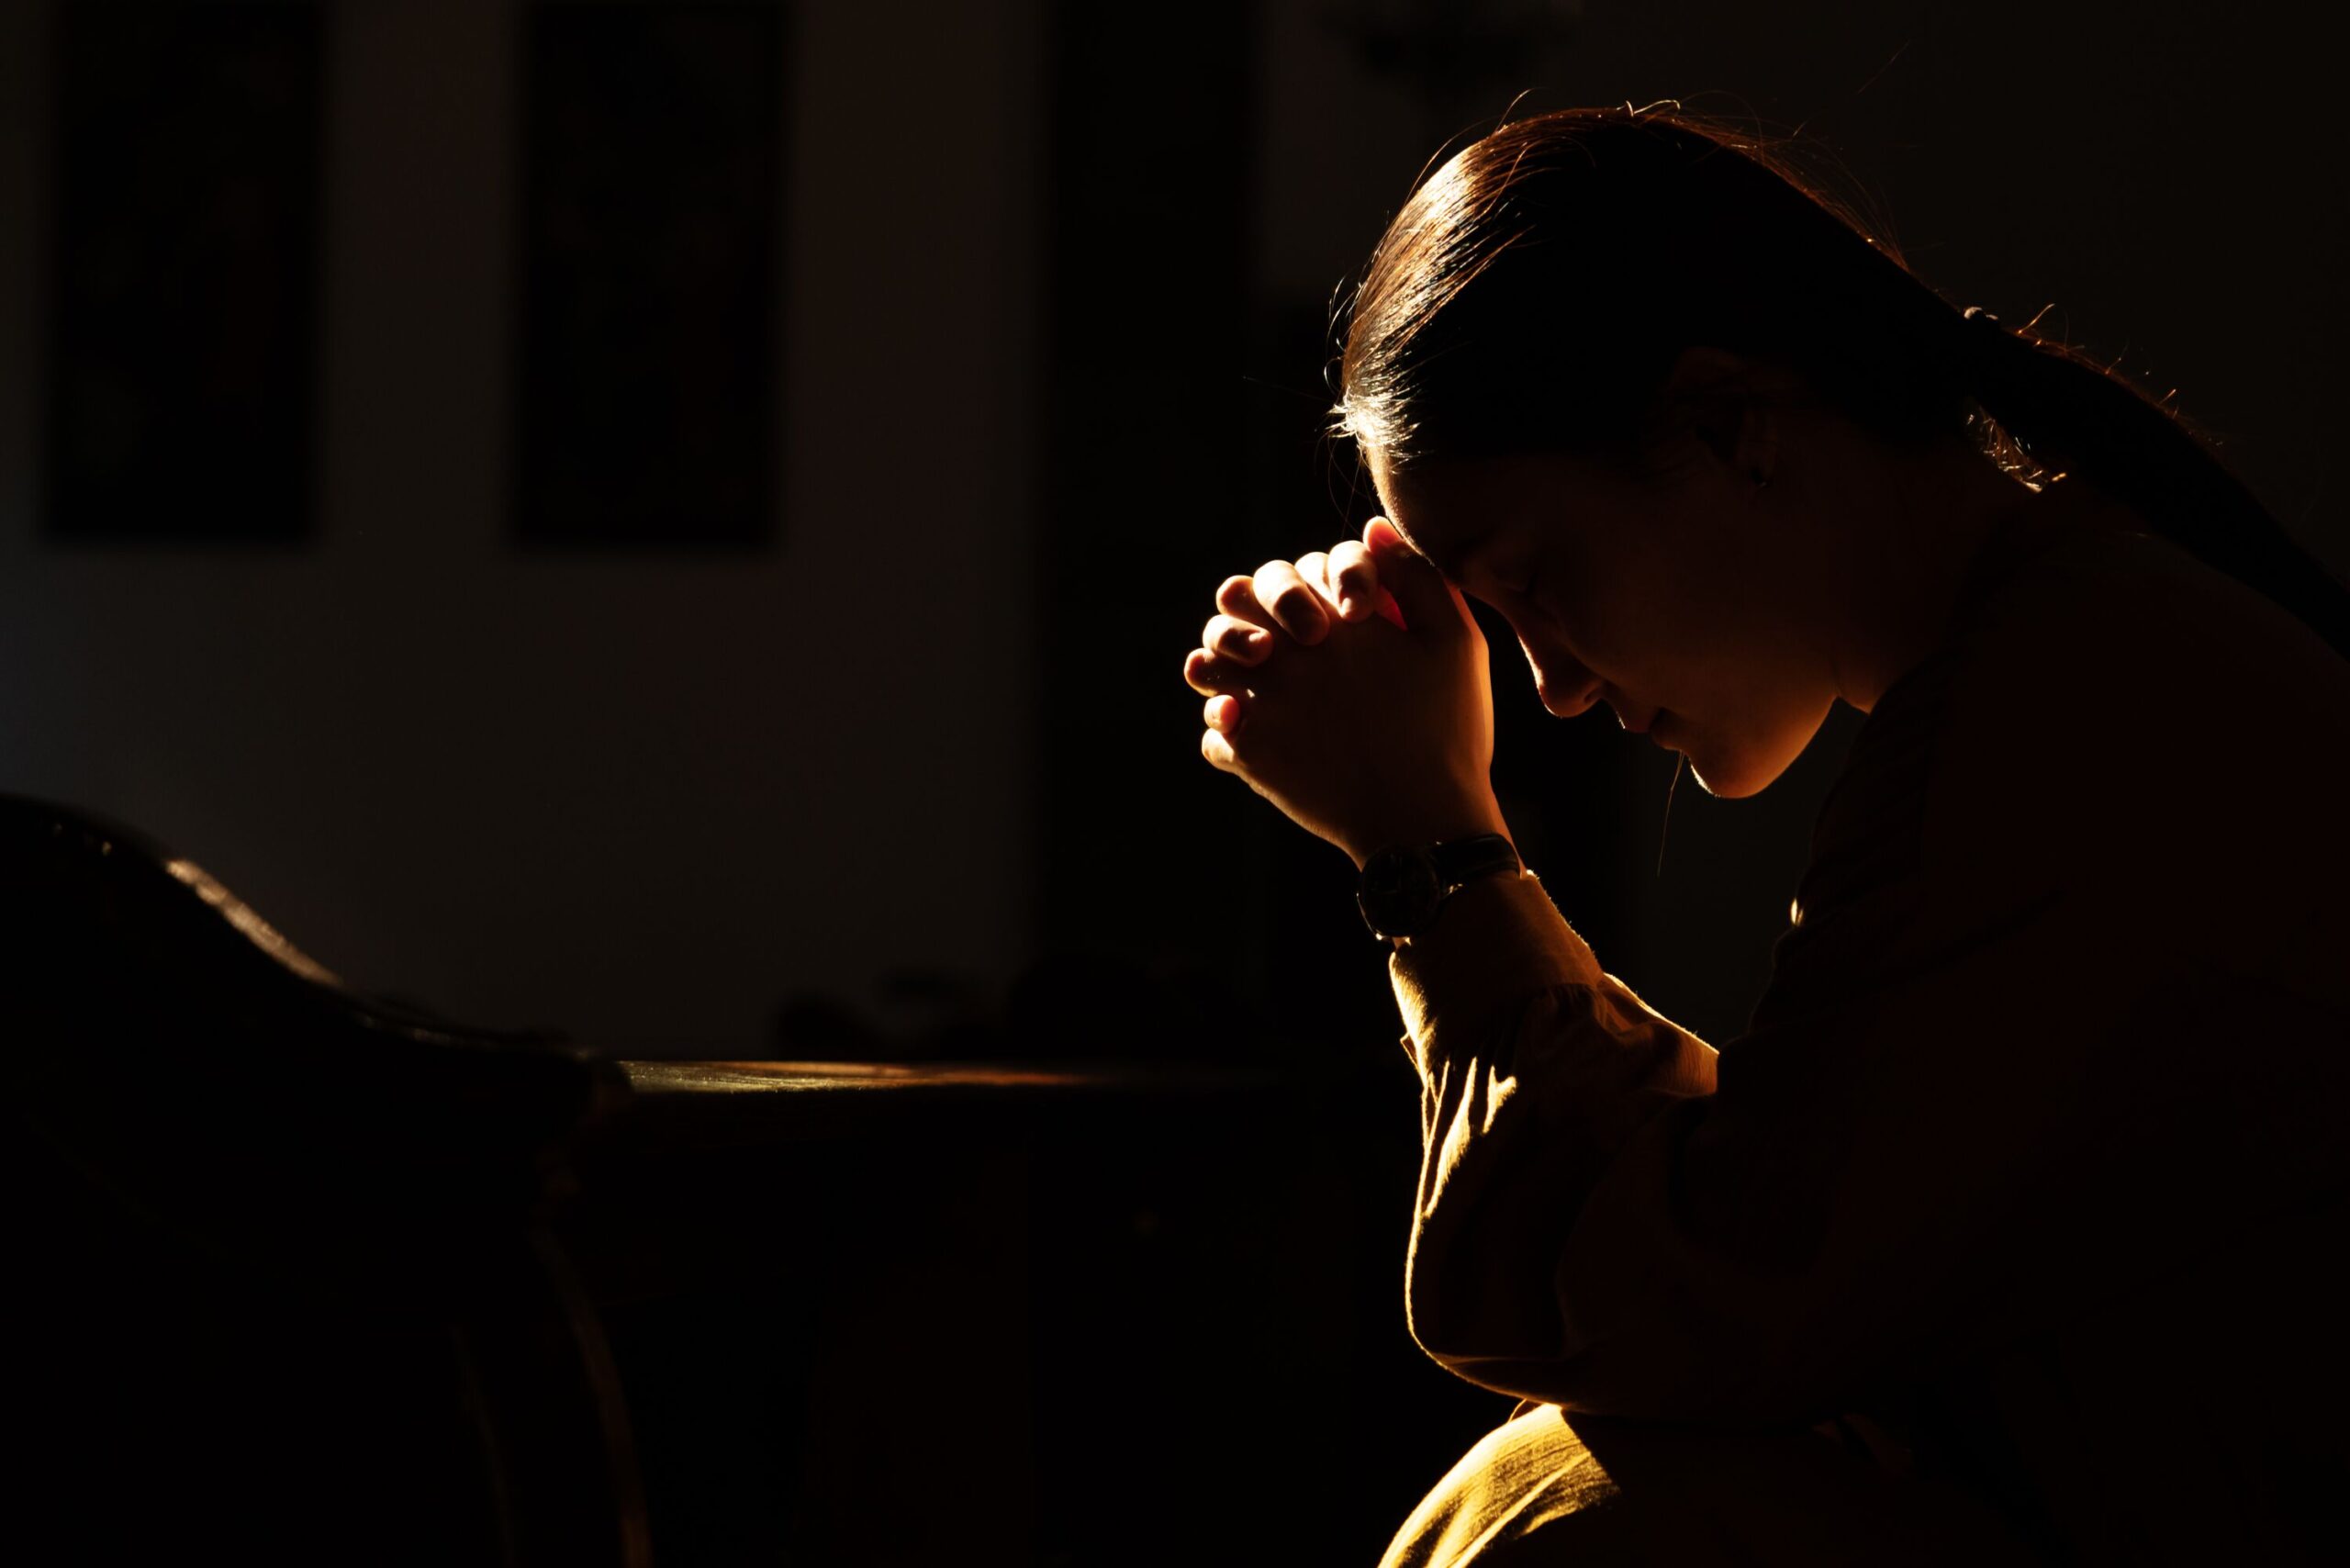 Frau betet in dunkler Umgebung